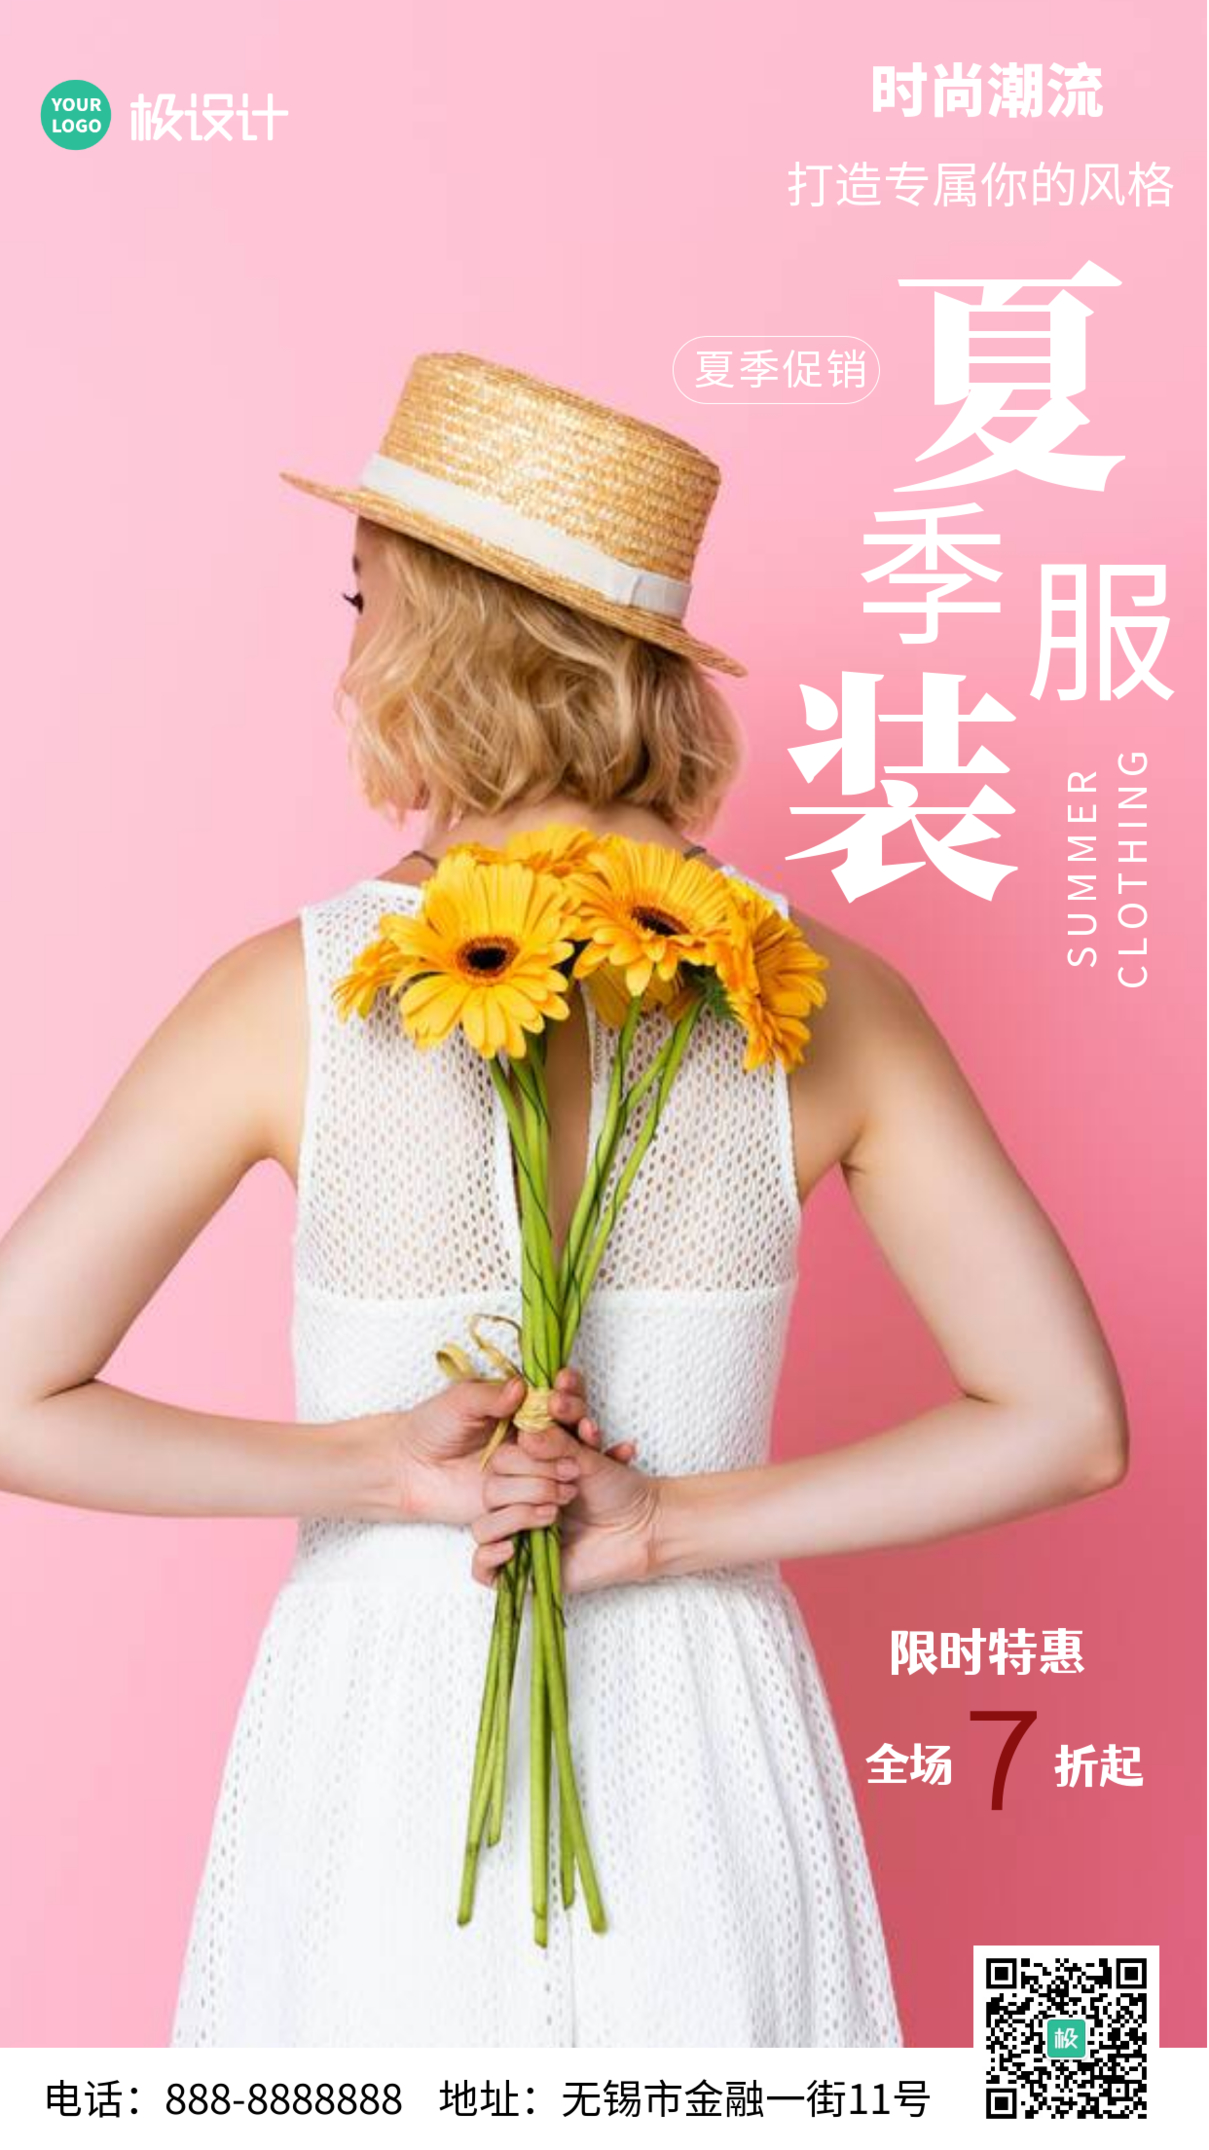 简约风摄影图时尚潮流夏季服装促销特惠粉色摄影图海报